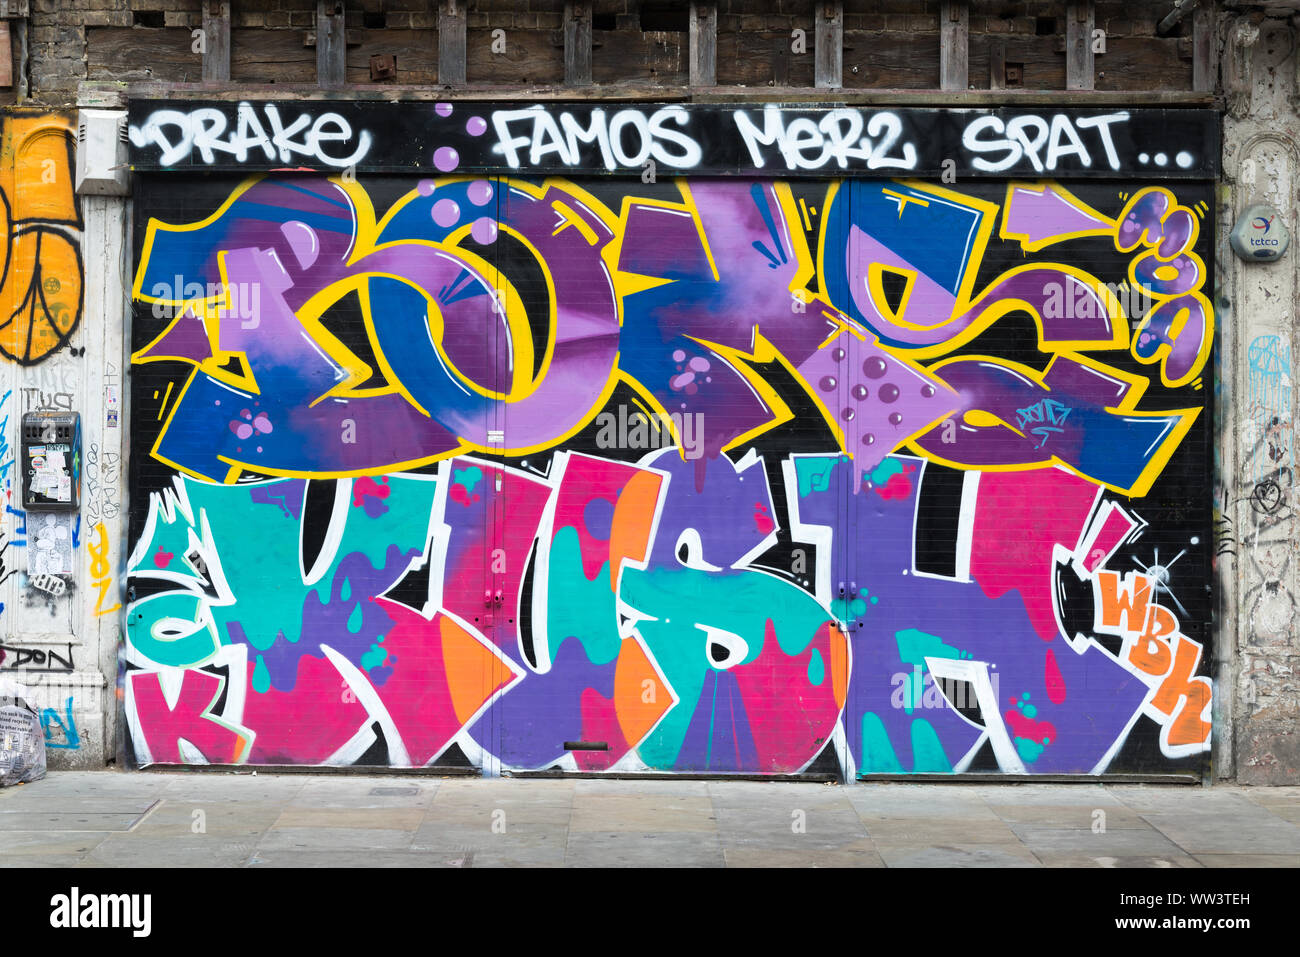 Graffiti, Shoreditch, London, UK Stock Photo